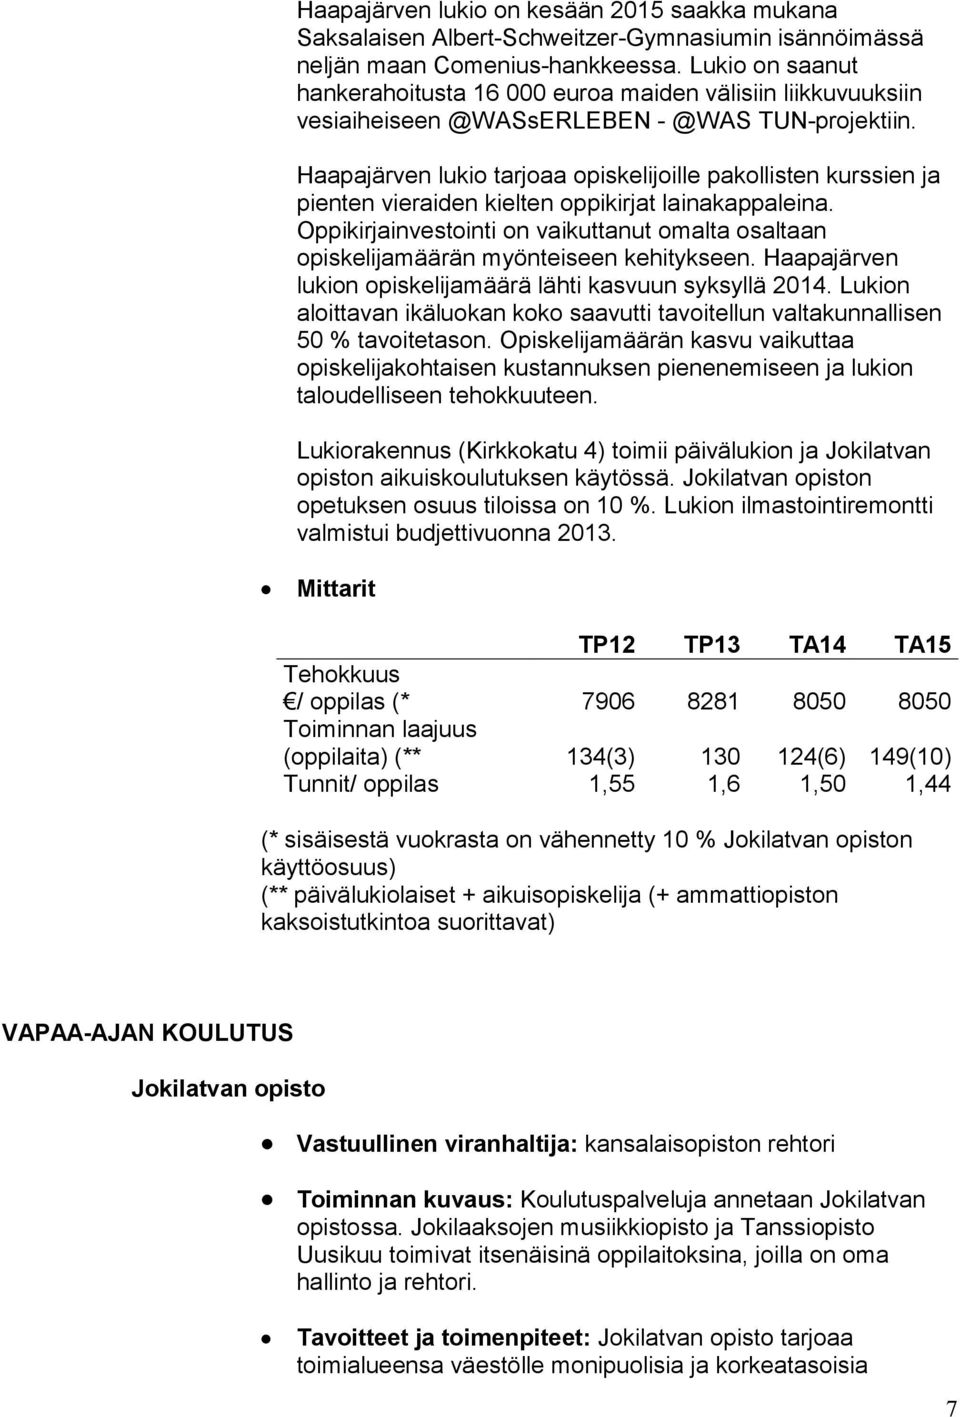 Haapajärven lukio tarjoaa opiskelijoille pakollisten kurssien ja pienten vieraiden kielten oppikirjat lainakappaleina.